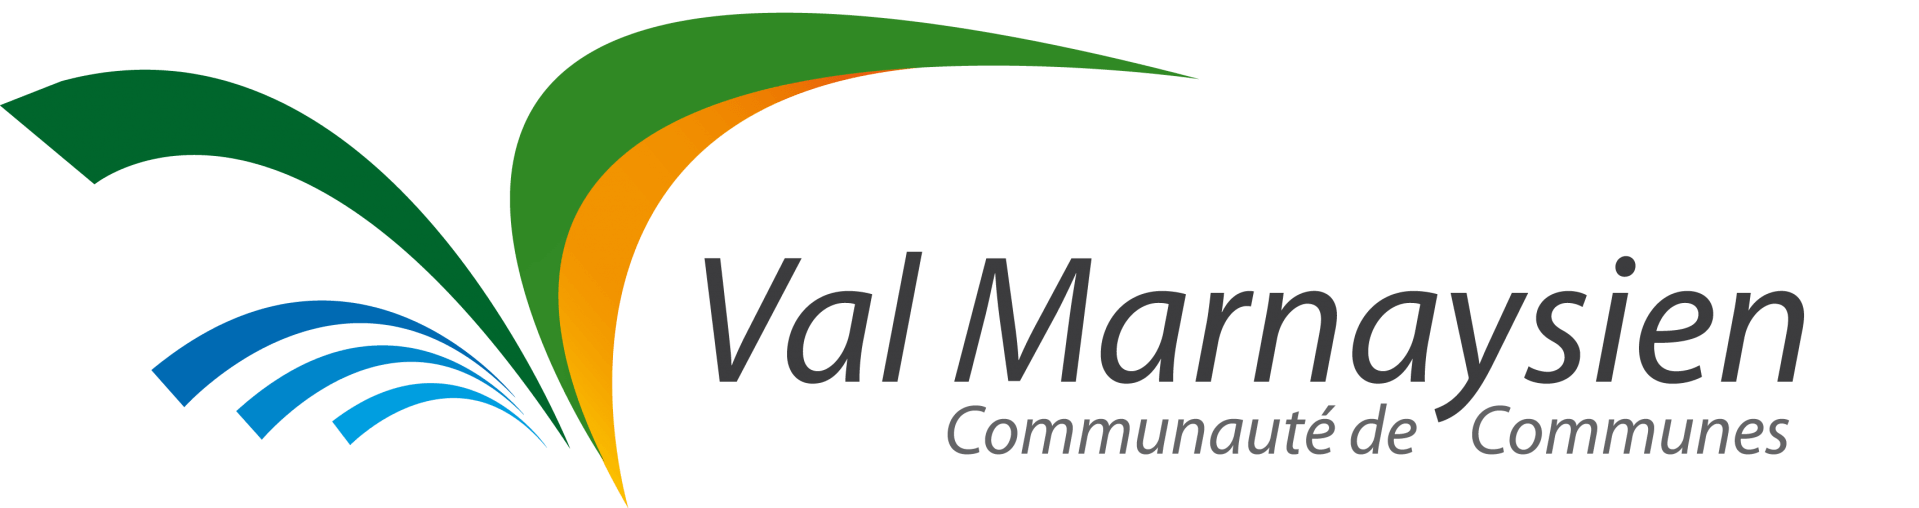 Val Marnaysien